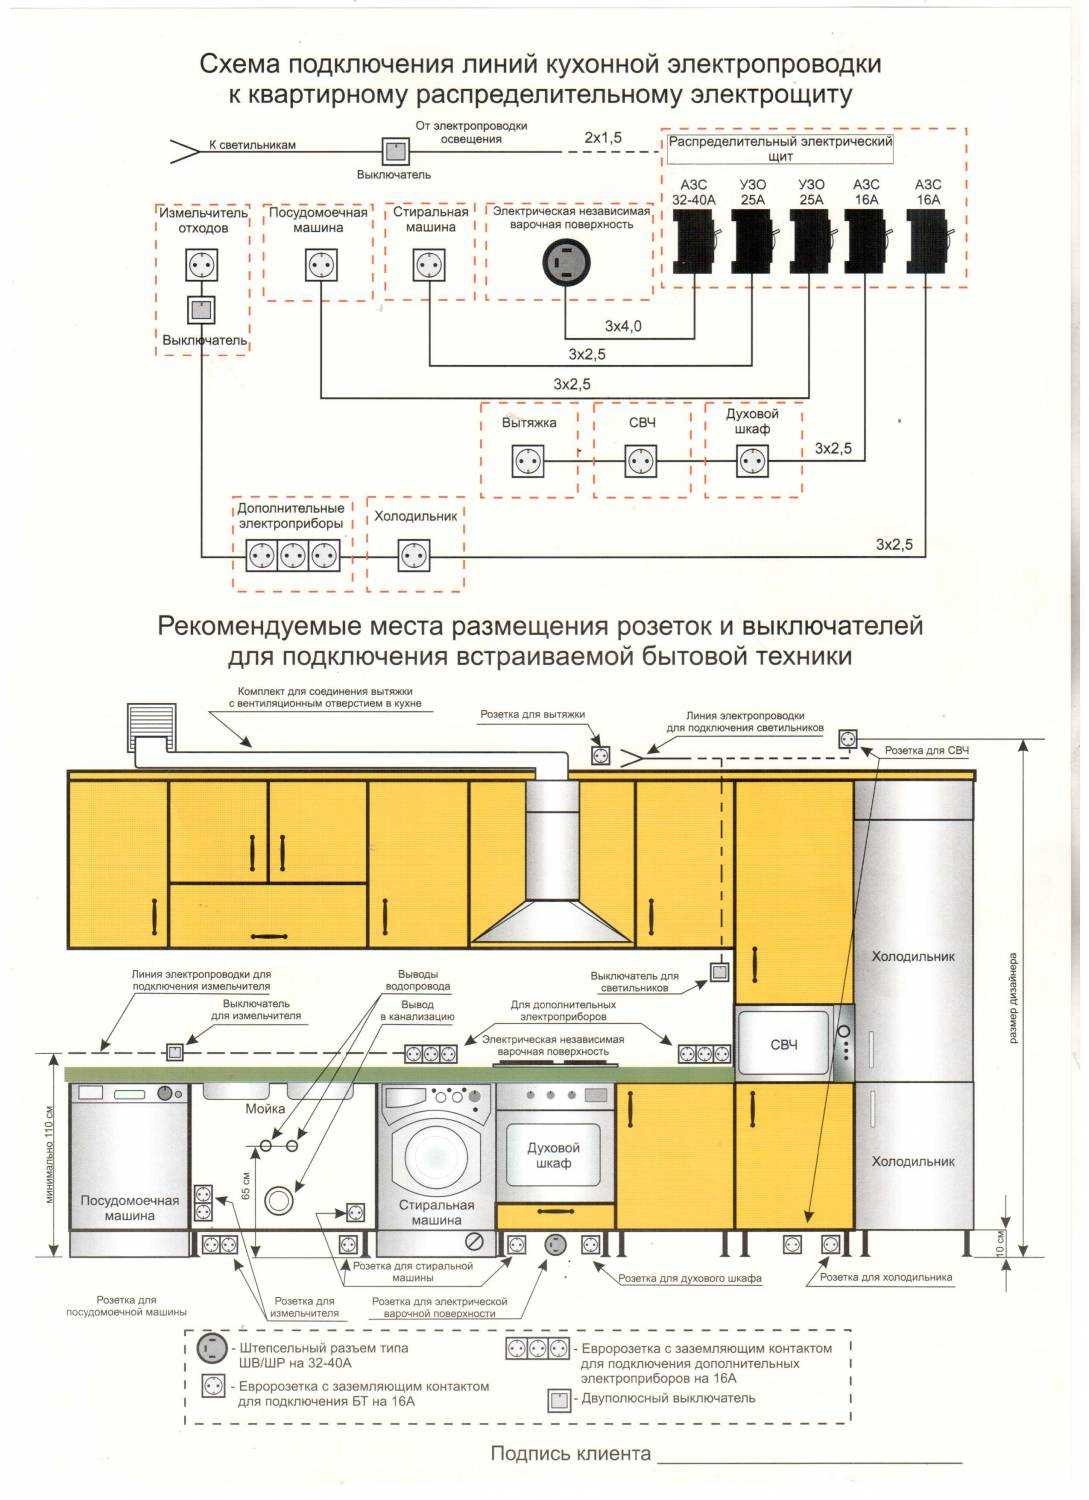 Как подключить вытяжку на кухне к вентиляции: подсоединение своими руками — инструкция от ivd.ru